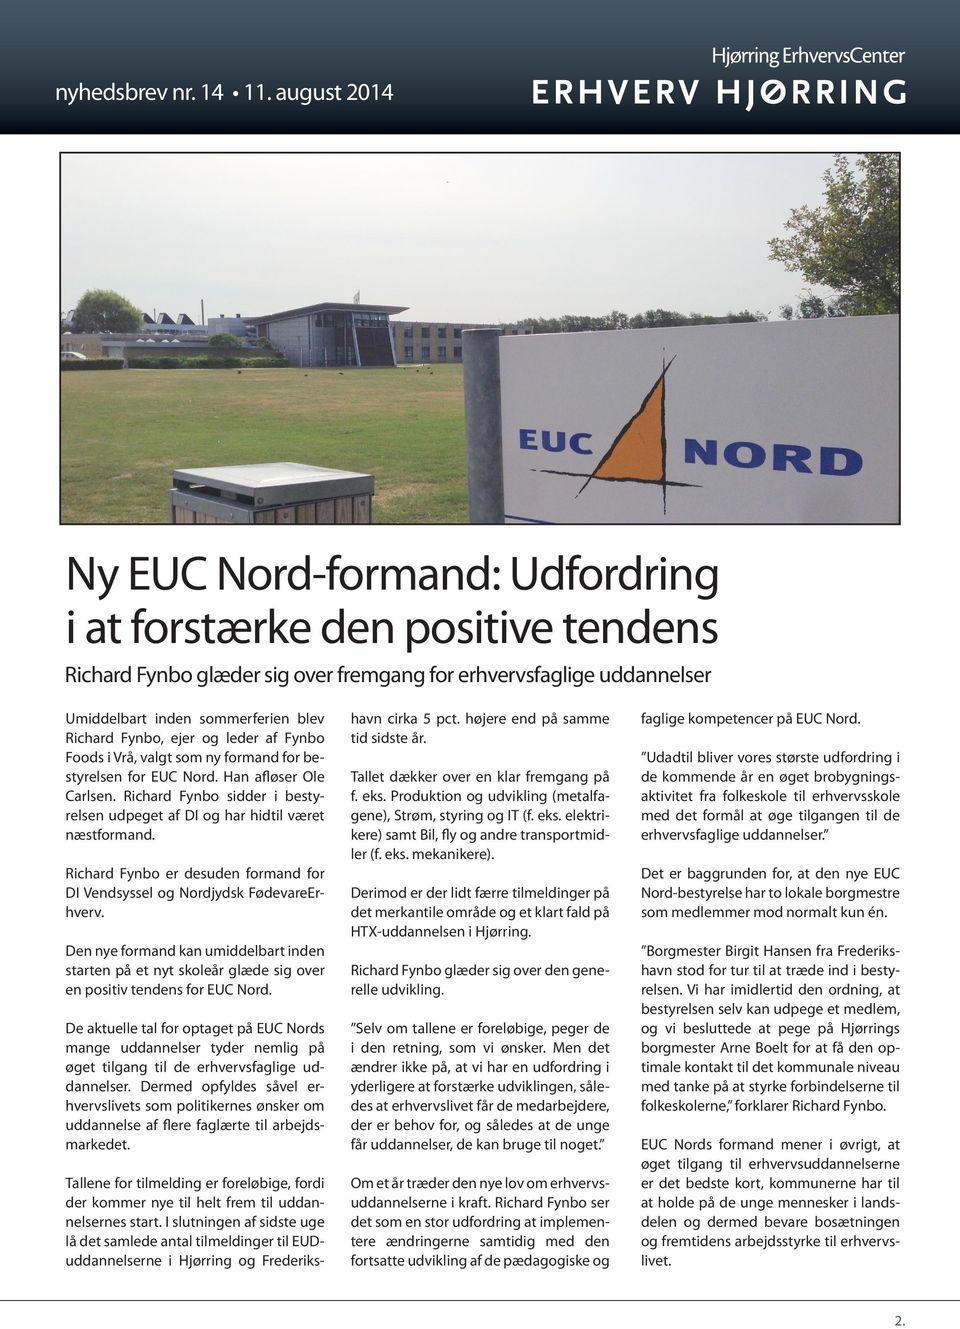 Richard Fynbo er desuden formand for DI Vendsyssel og Nordjydsk FødevareErhverv. Den nye formand kan umiddelbart inden starten på et nyt skoleår glæde sig over en positiv tendens for EUC Nord.